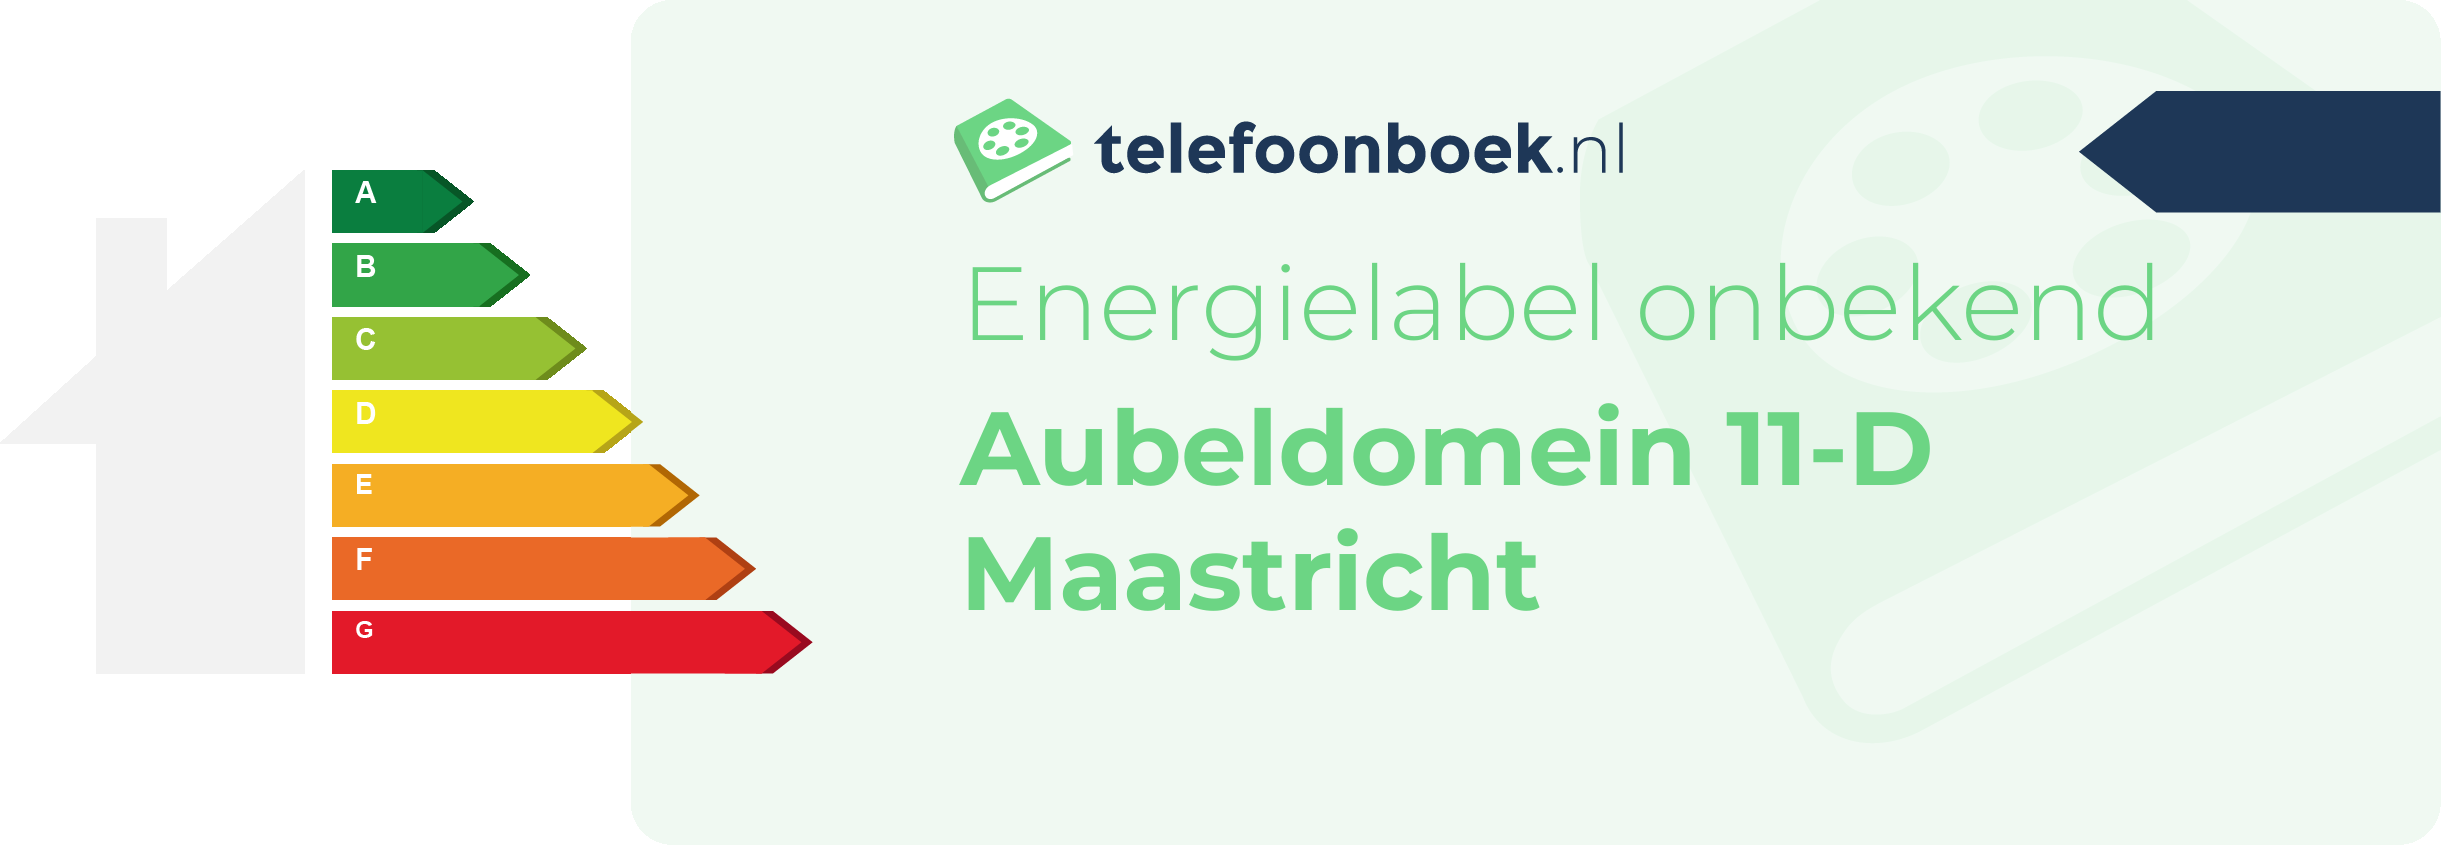 Energielabel Aubeldomein 11-D Maastricht